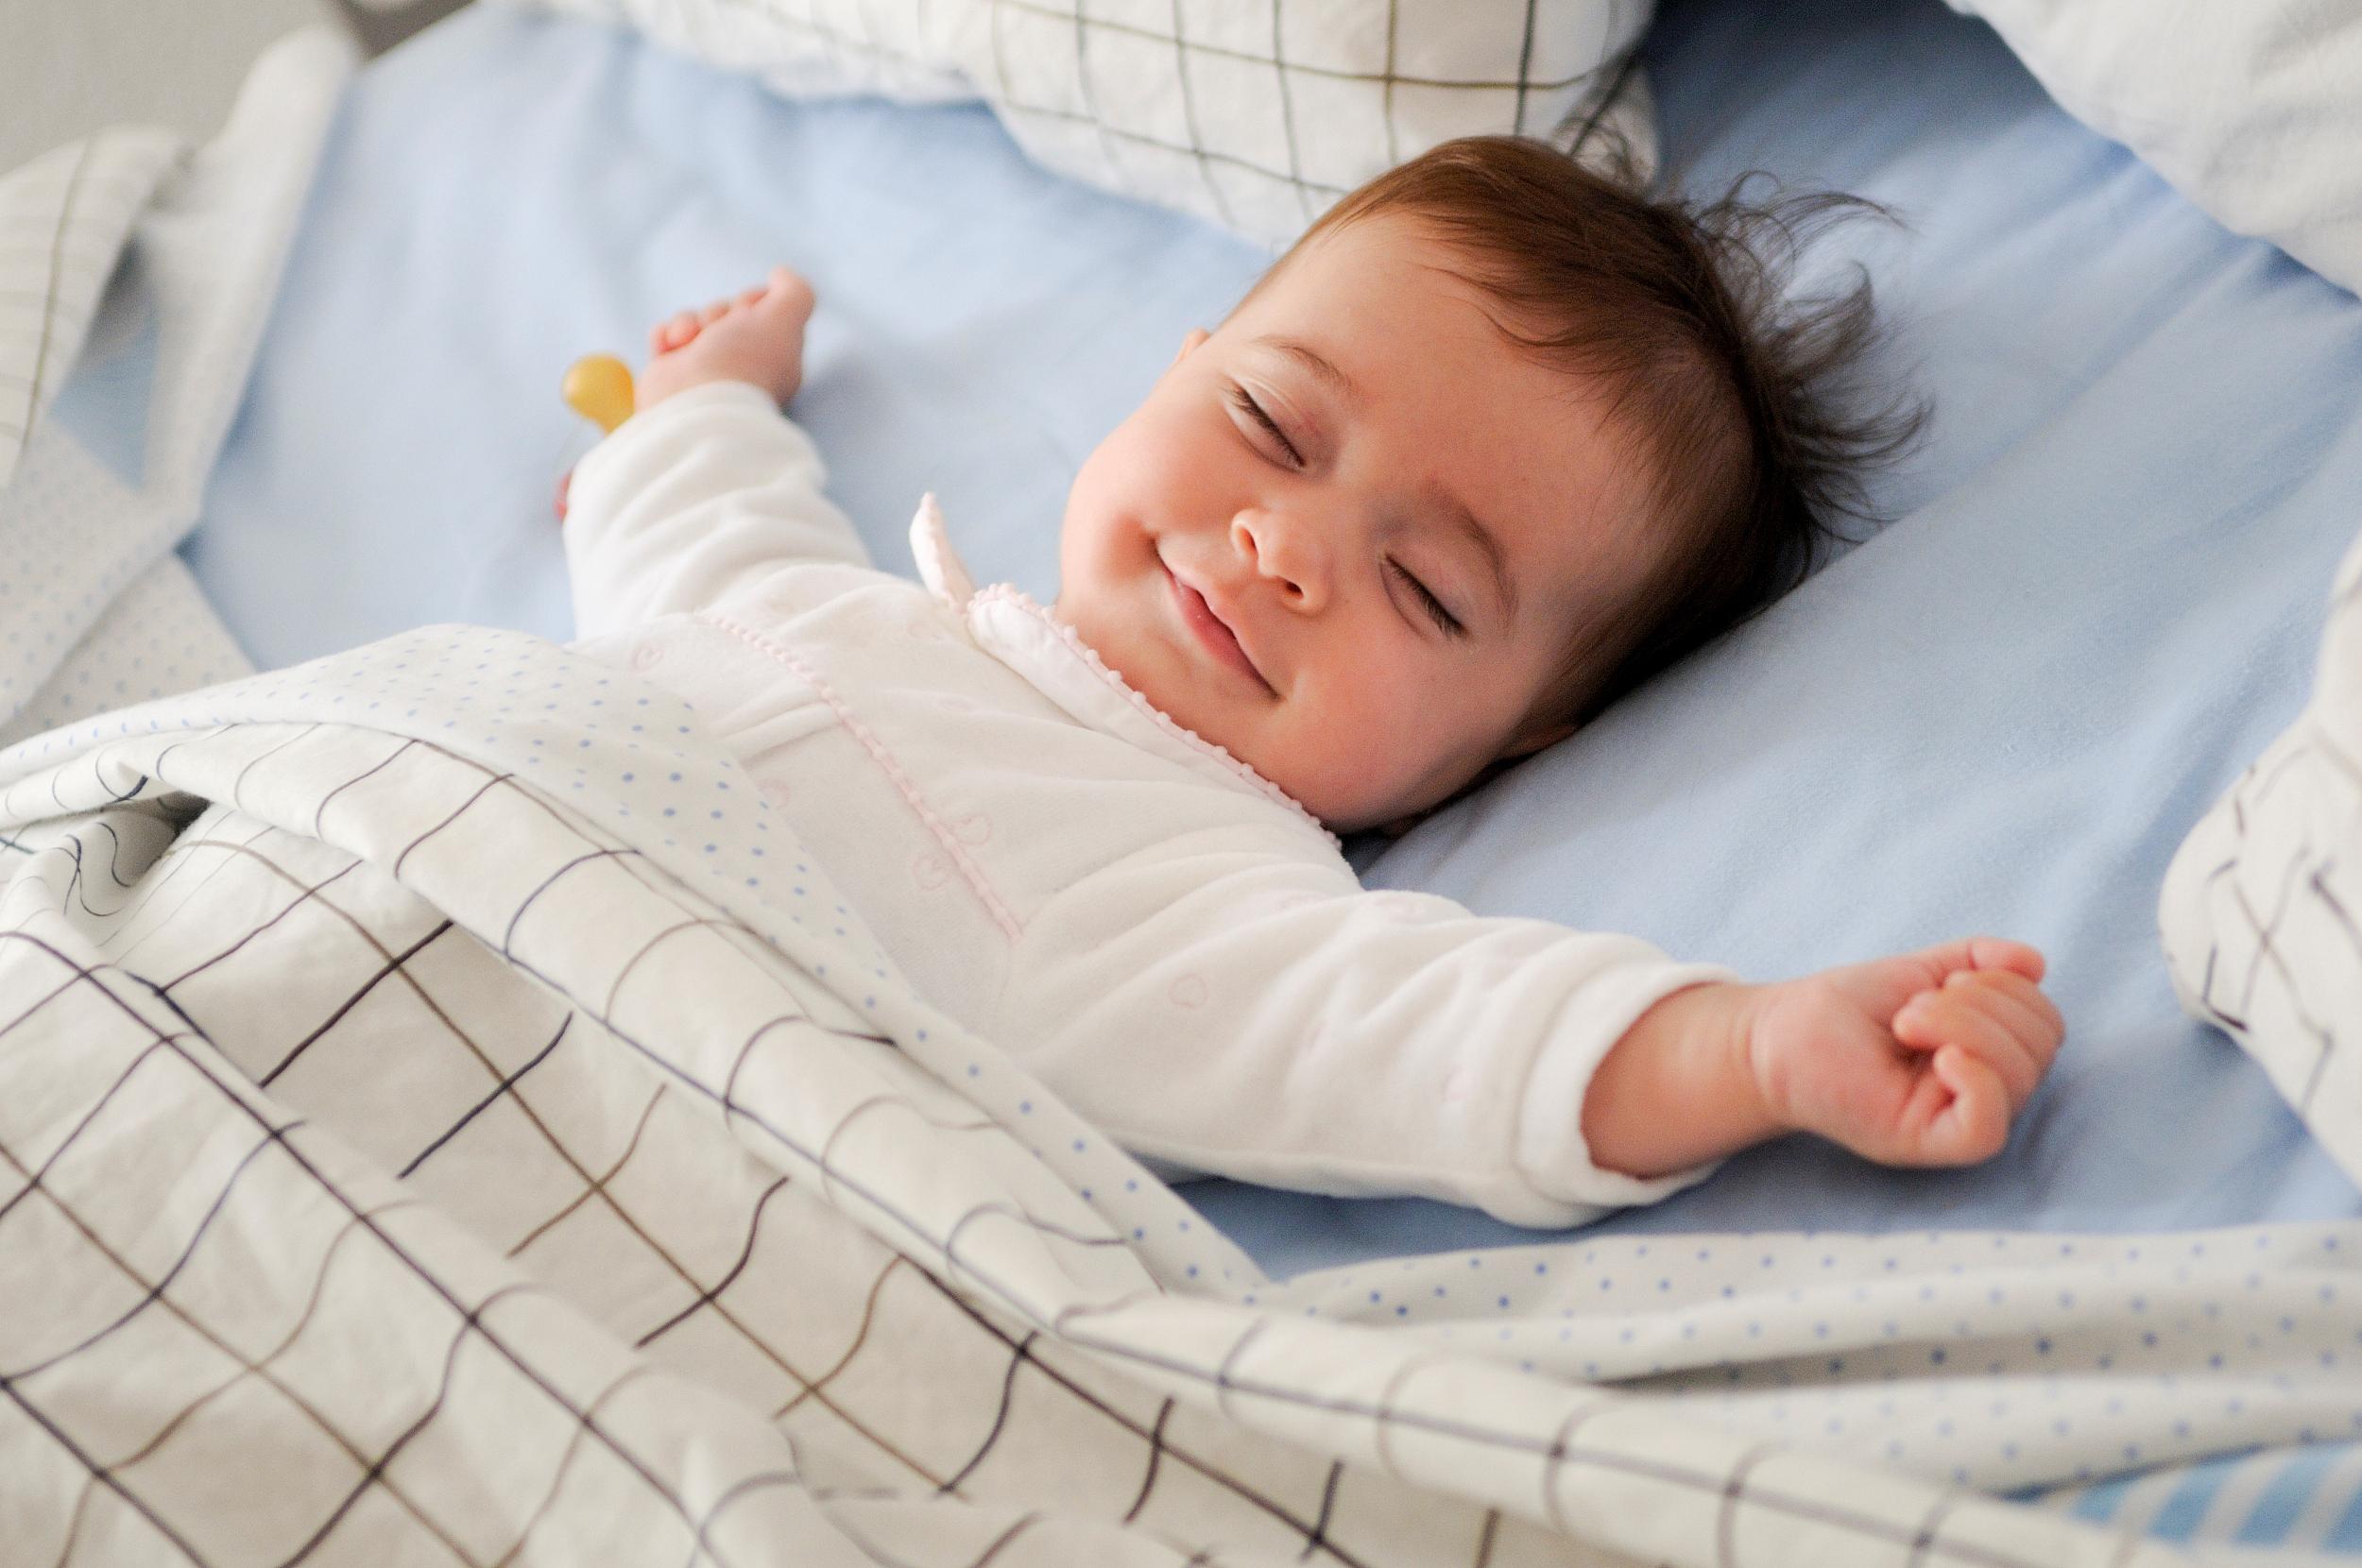 【好好入睡】學齡前孩童5招睡眠方法+ 4B原則助6個月大嬰兒睡 | Oh!爸媽 - Ohpama.com一站式升學、親子網站